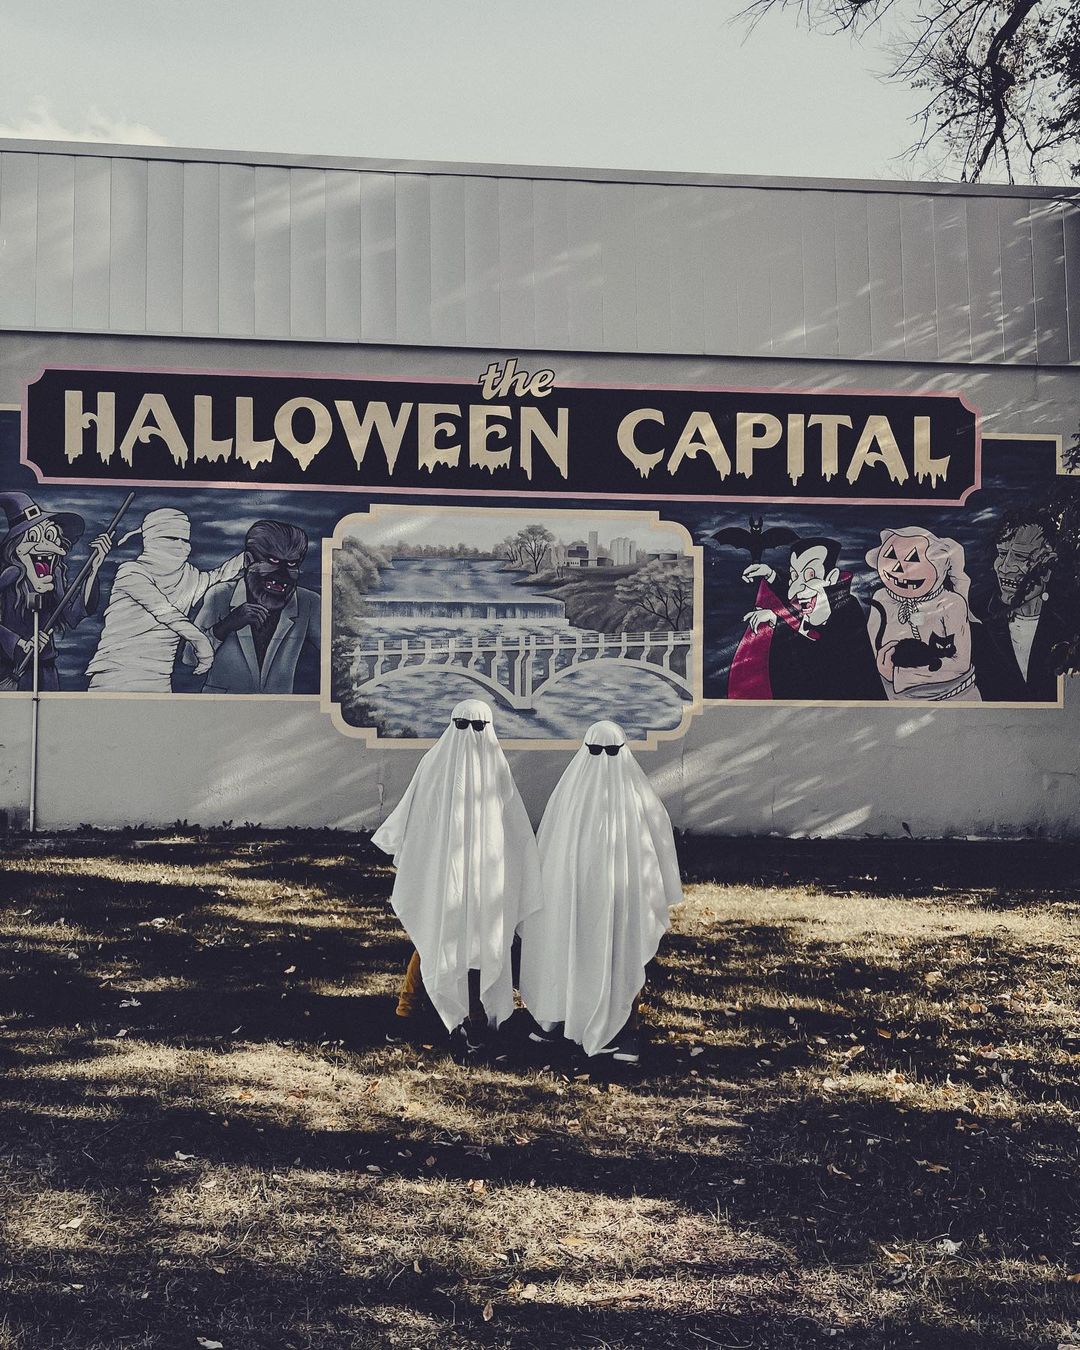 Thủ đô Halloween nổi tiếng khắp nước Mỹ. Ảnh: @rassatpotato